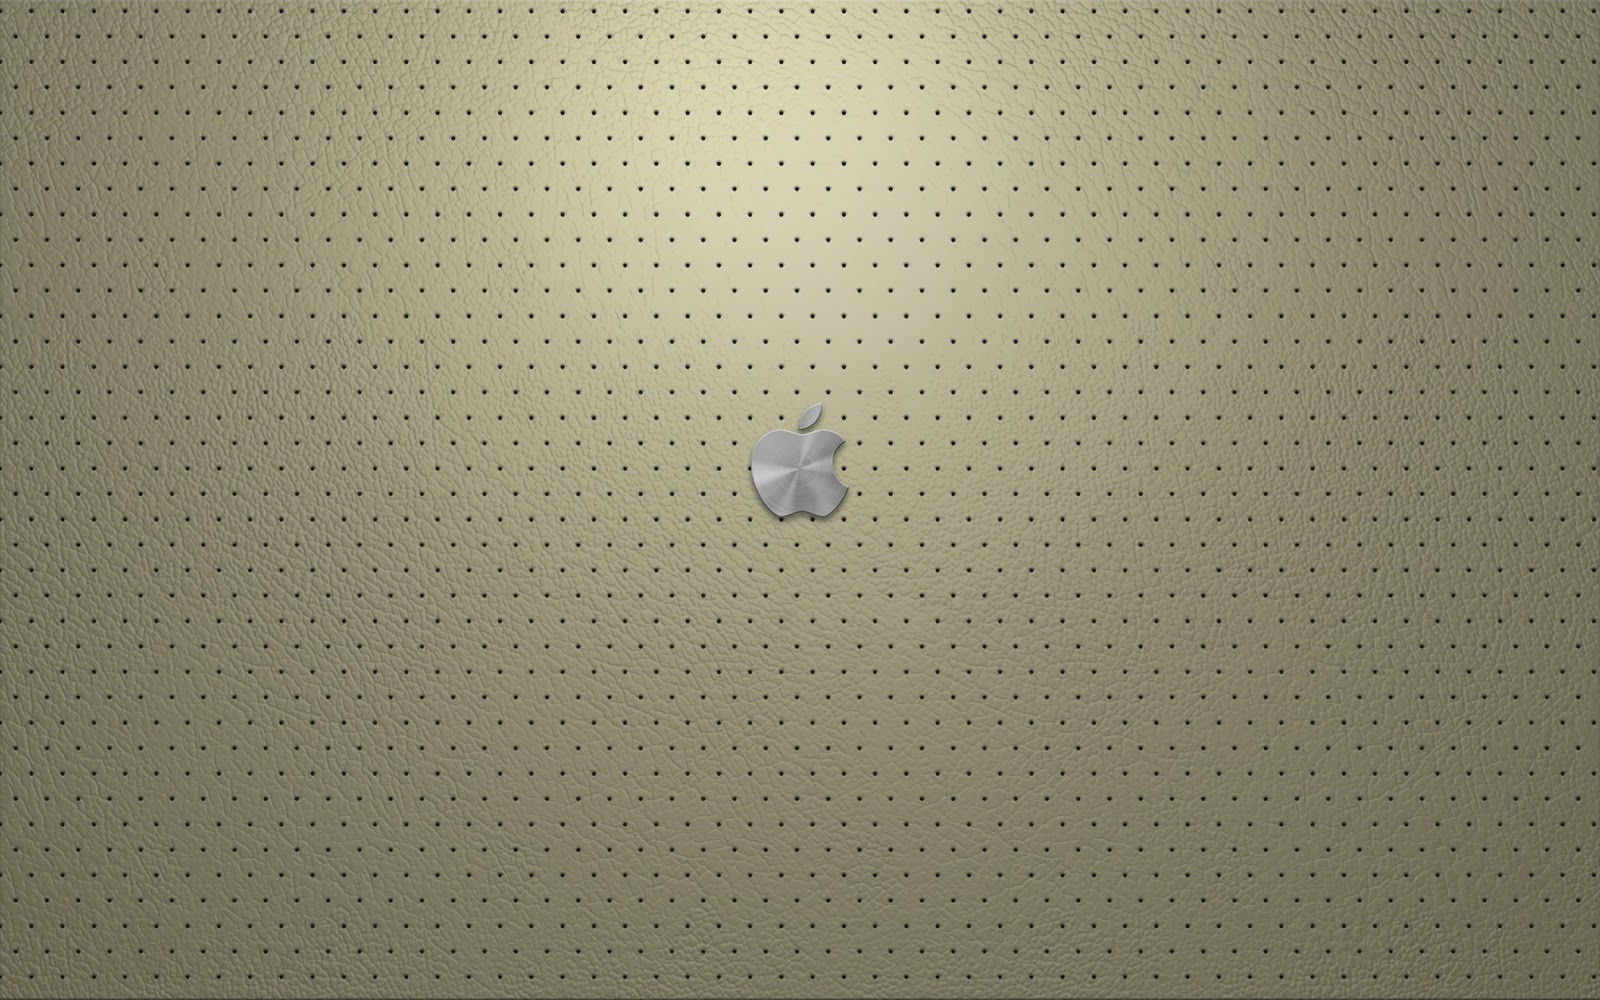 ... - Best desktop HD Wallpapers: Apple Company HD Wallpapers